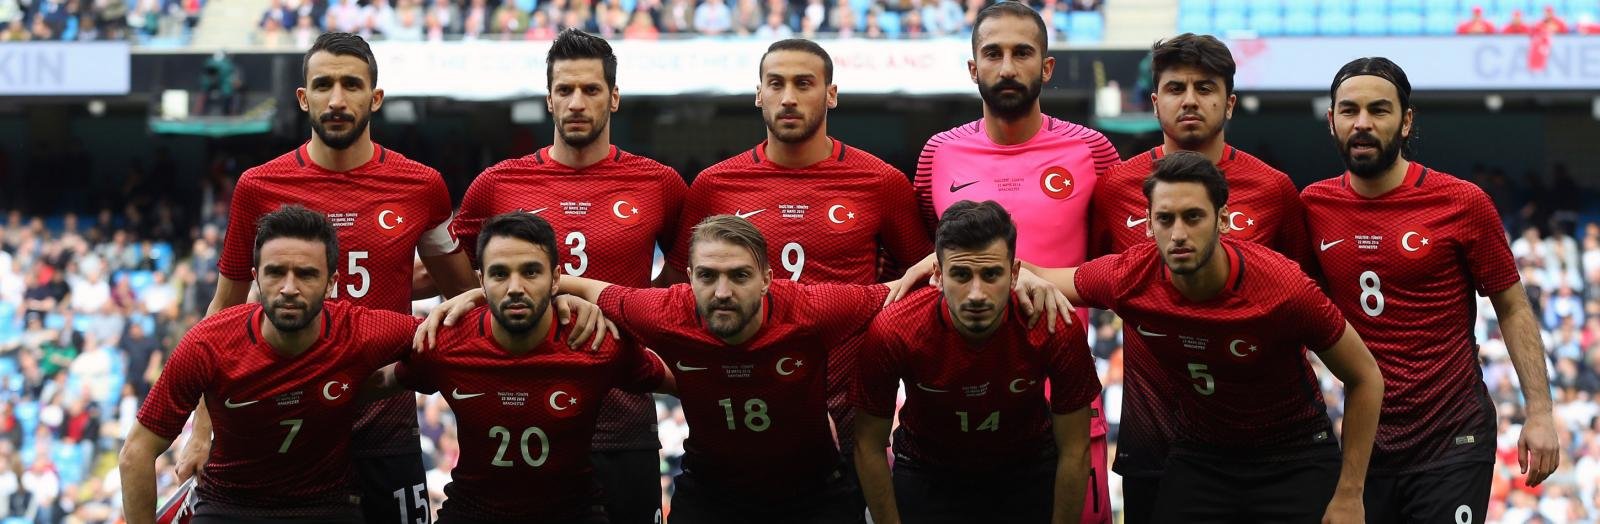 Czech Republic 0-2 Turkey: EURO 2016 Group D Report